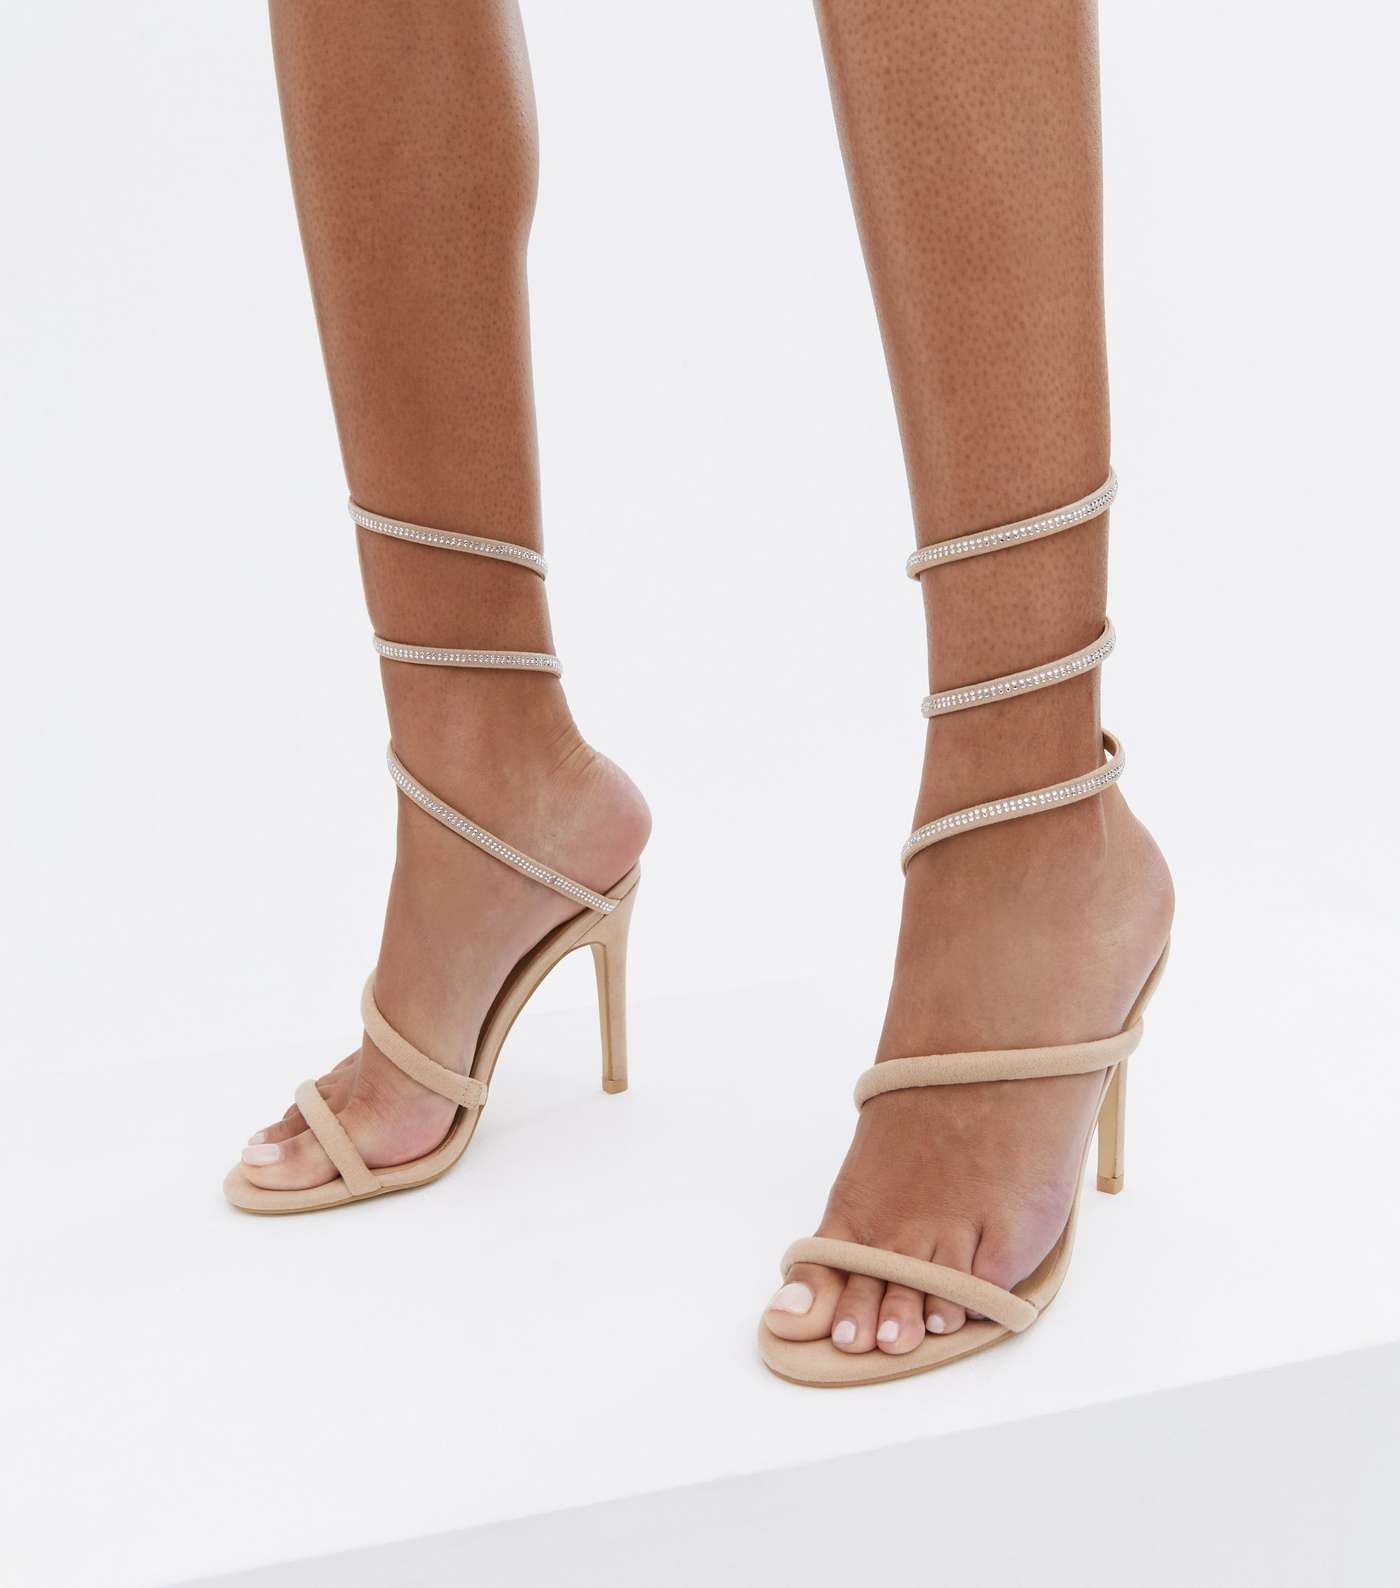 Pale Pink Diamanté High Ankle Stiletto Heel Sandals Image 2